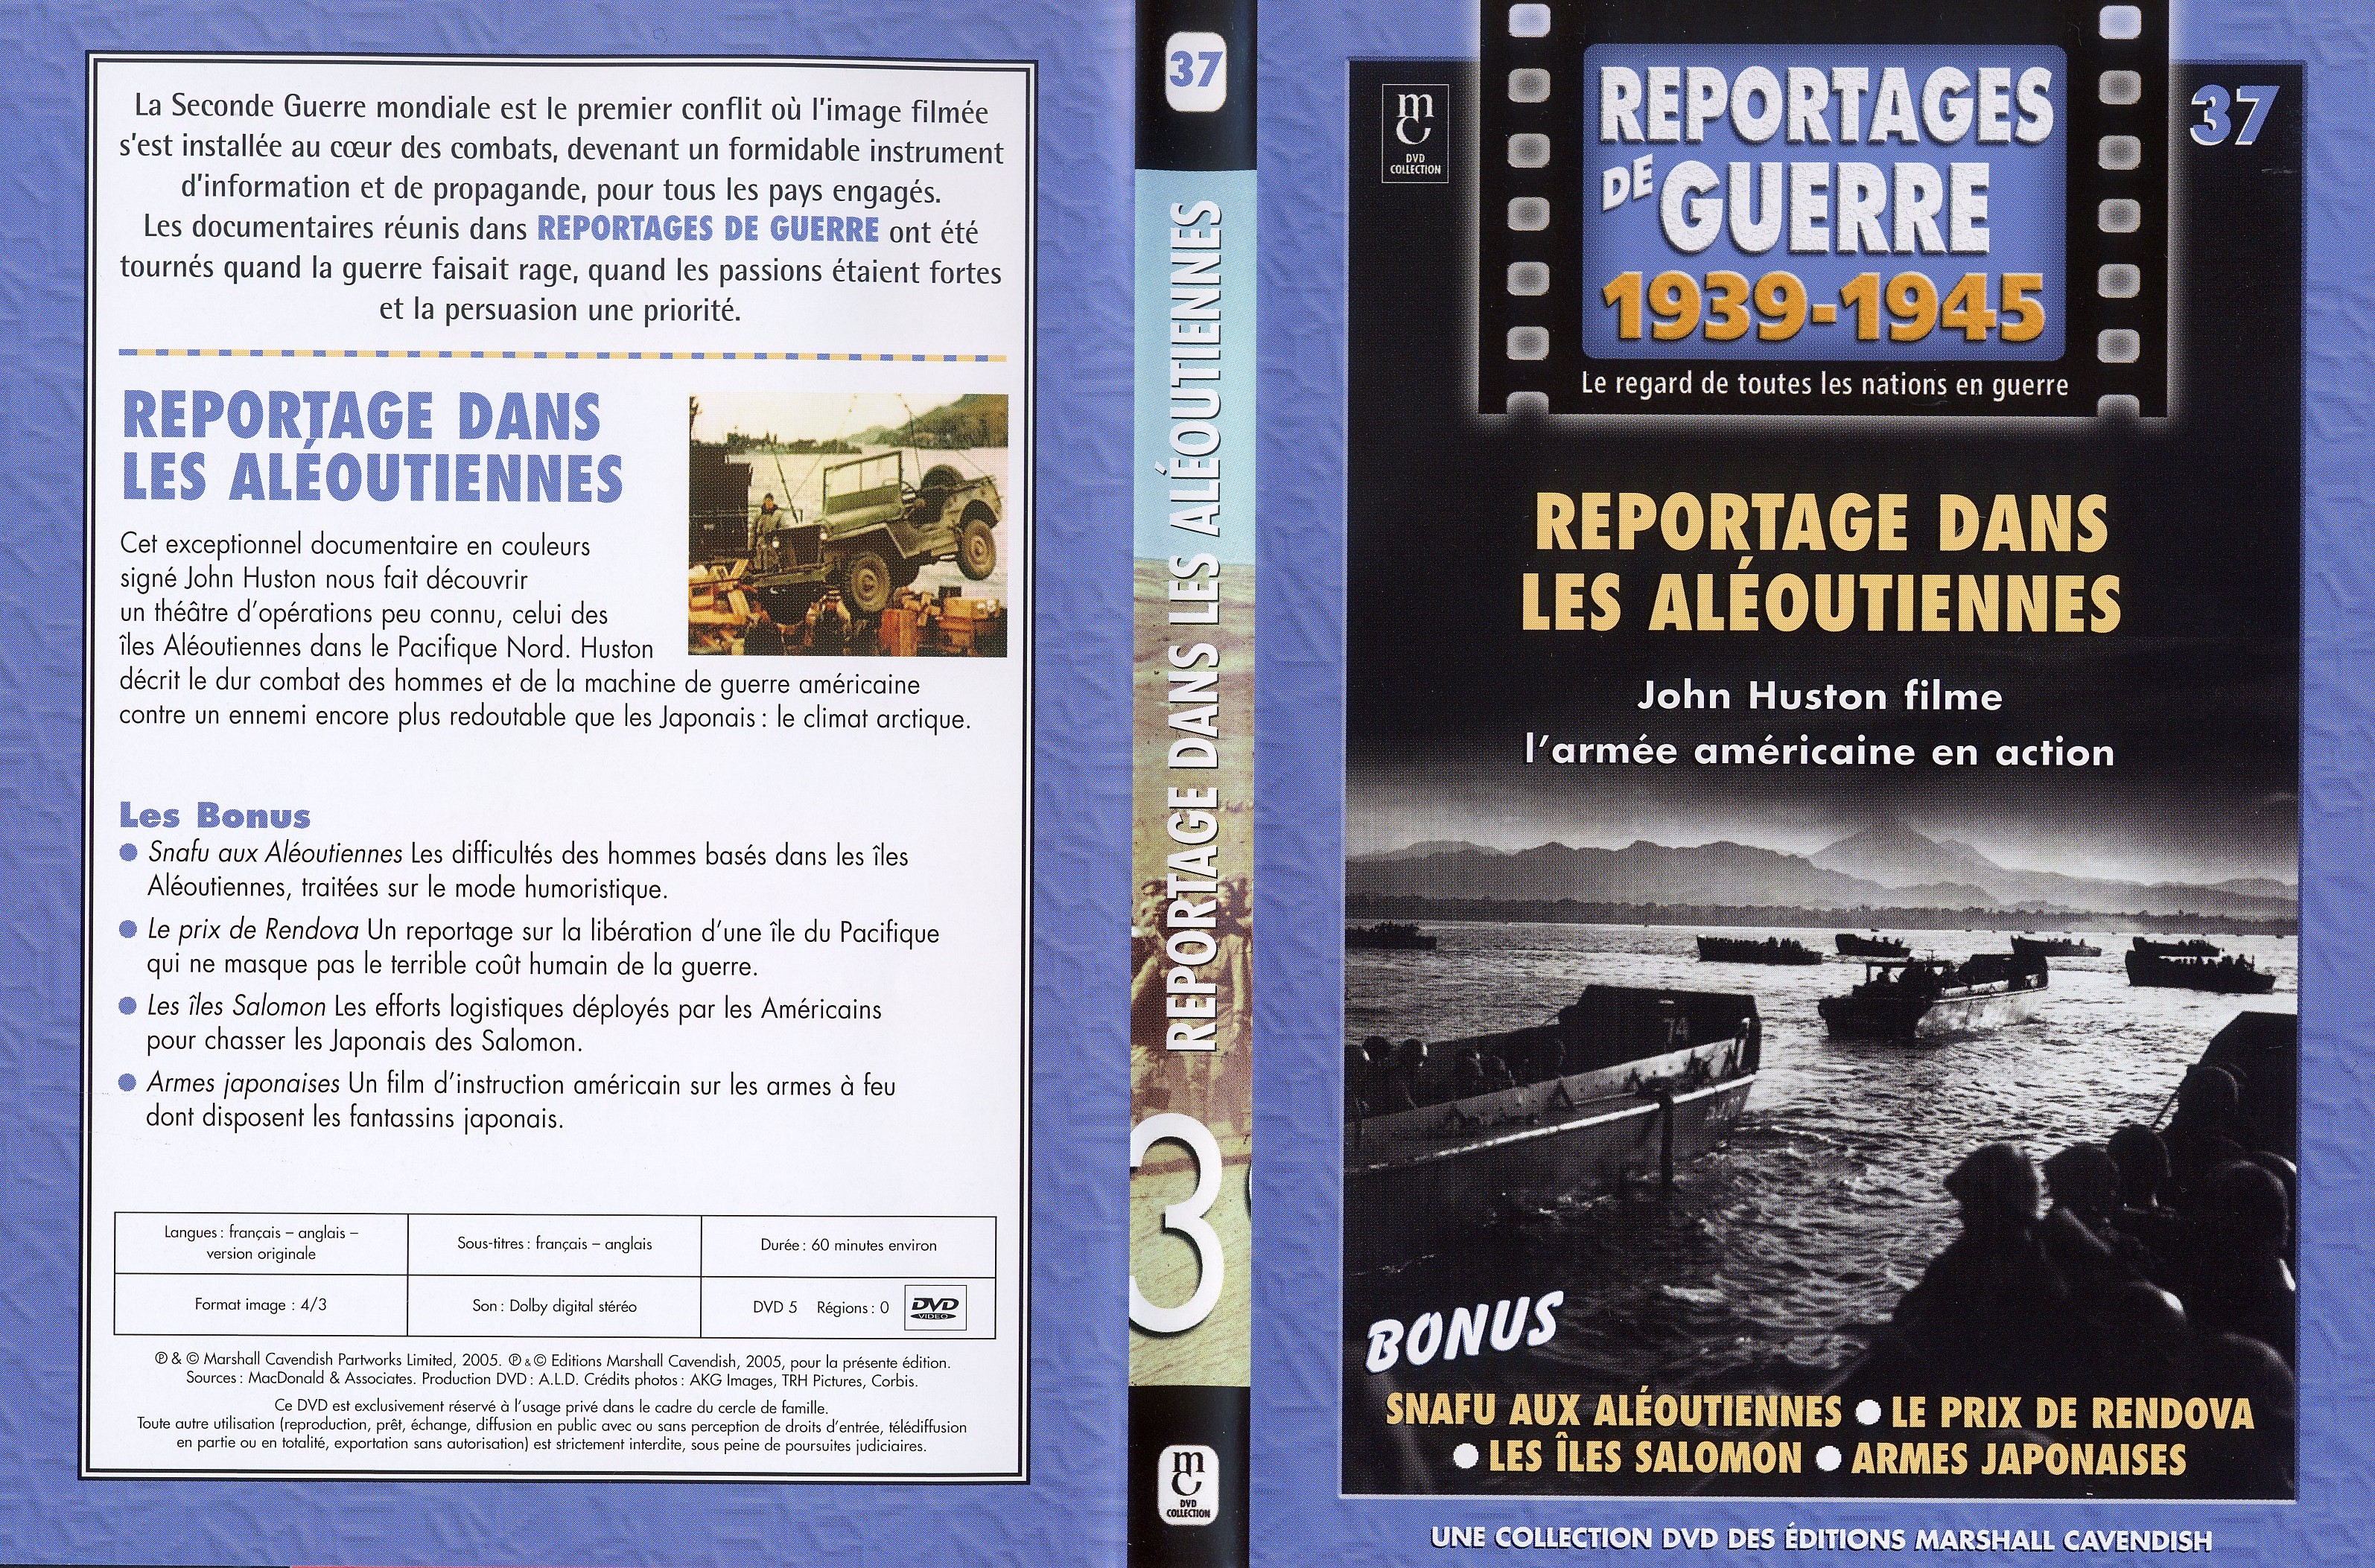 Jaquette DVD Reportages de guerre vol 37